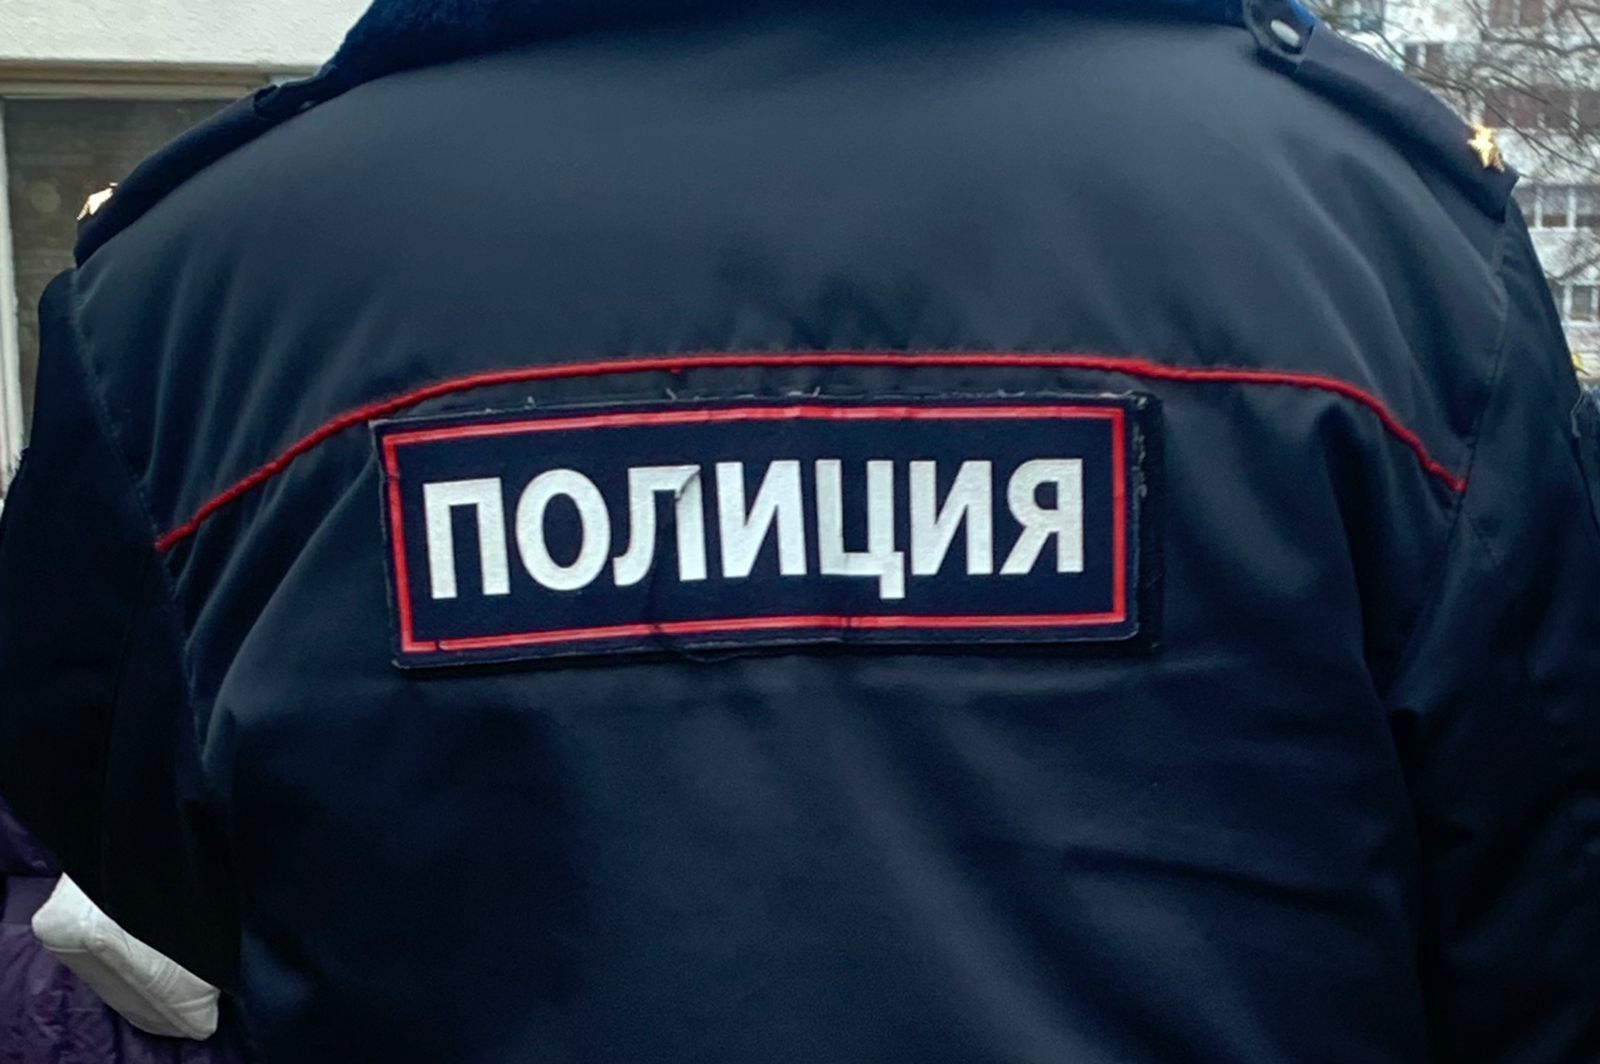 Бывшего руководителя «Метроэлектротранса» Асфана Галявова задержали в РТ